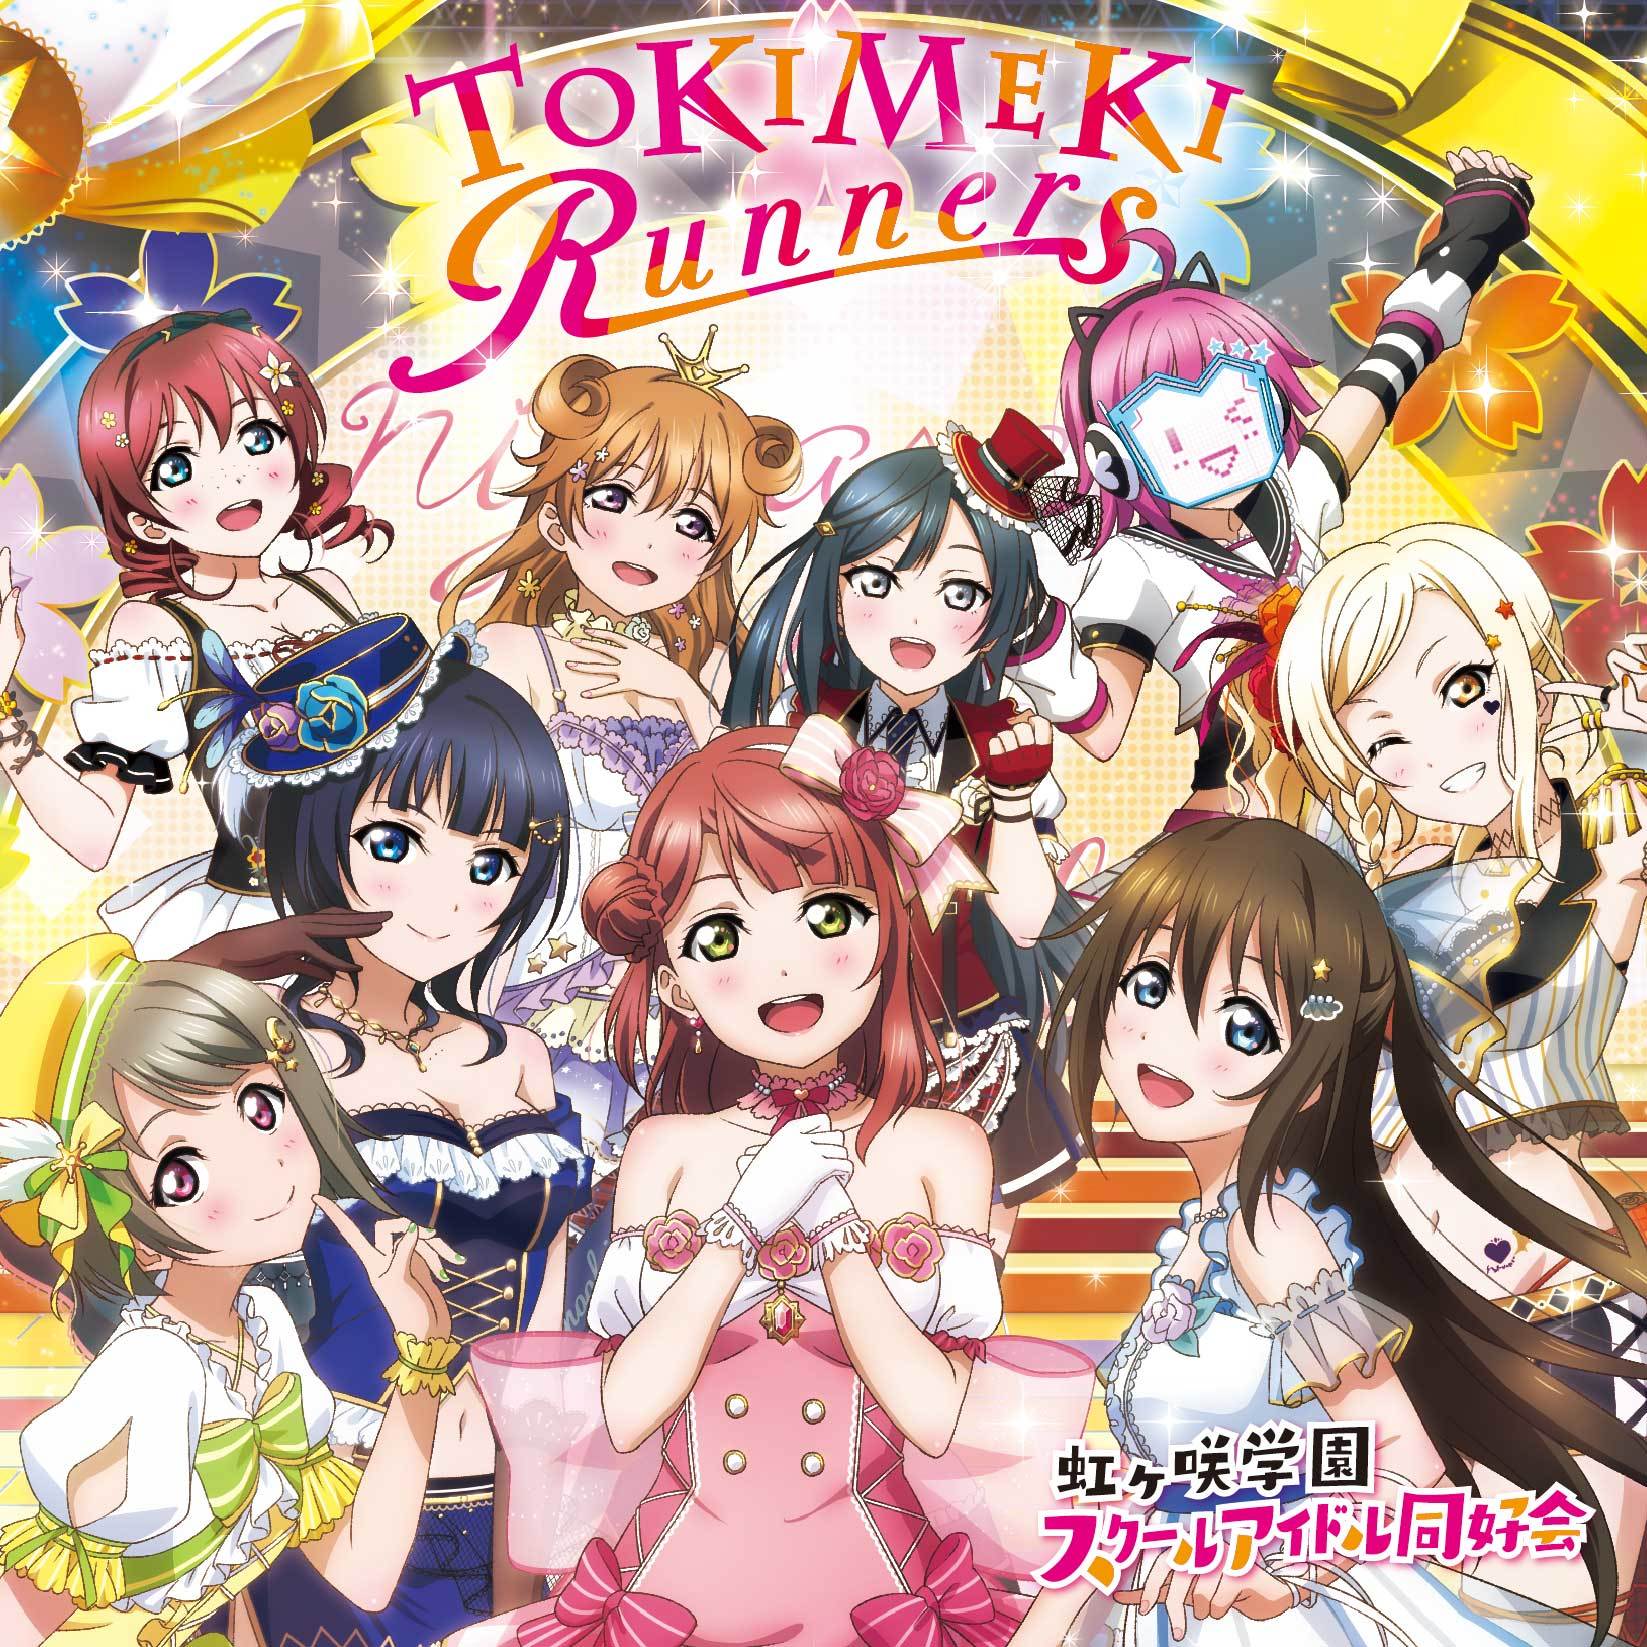 虹ヶ咲学園スクールアイドル同好会のデビューアルバム『TOKIMEKI Runners』